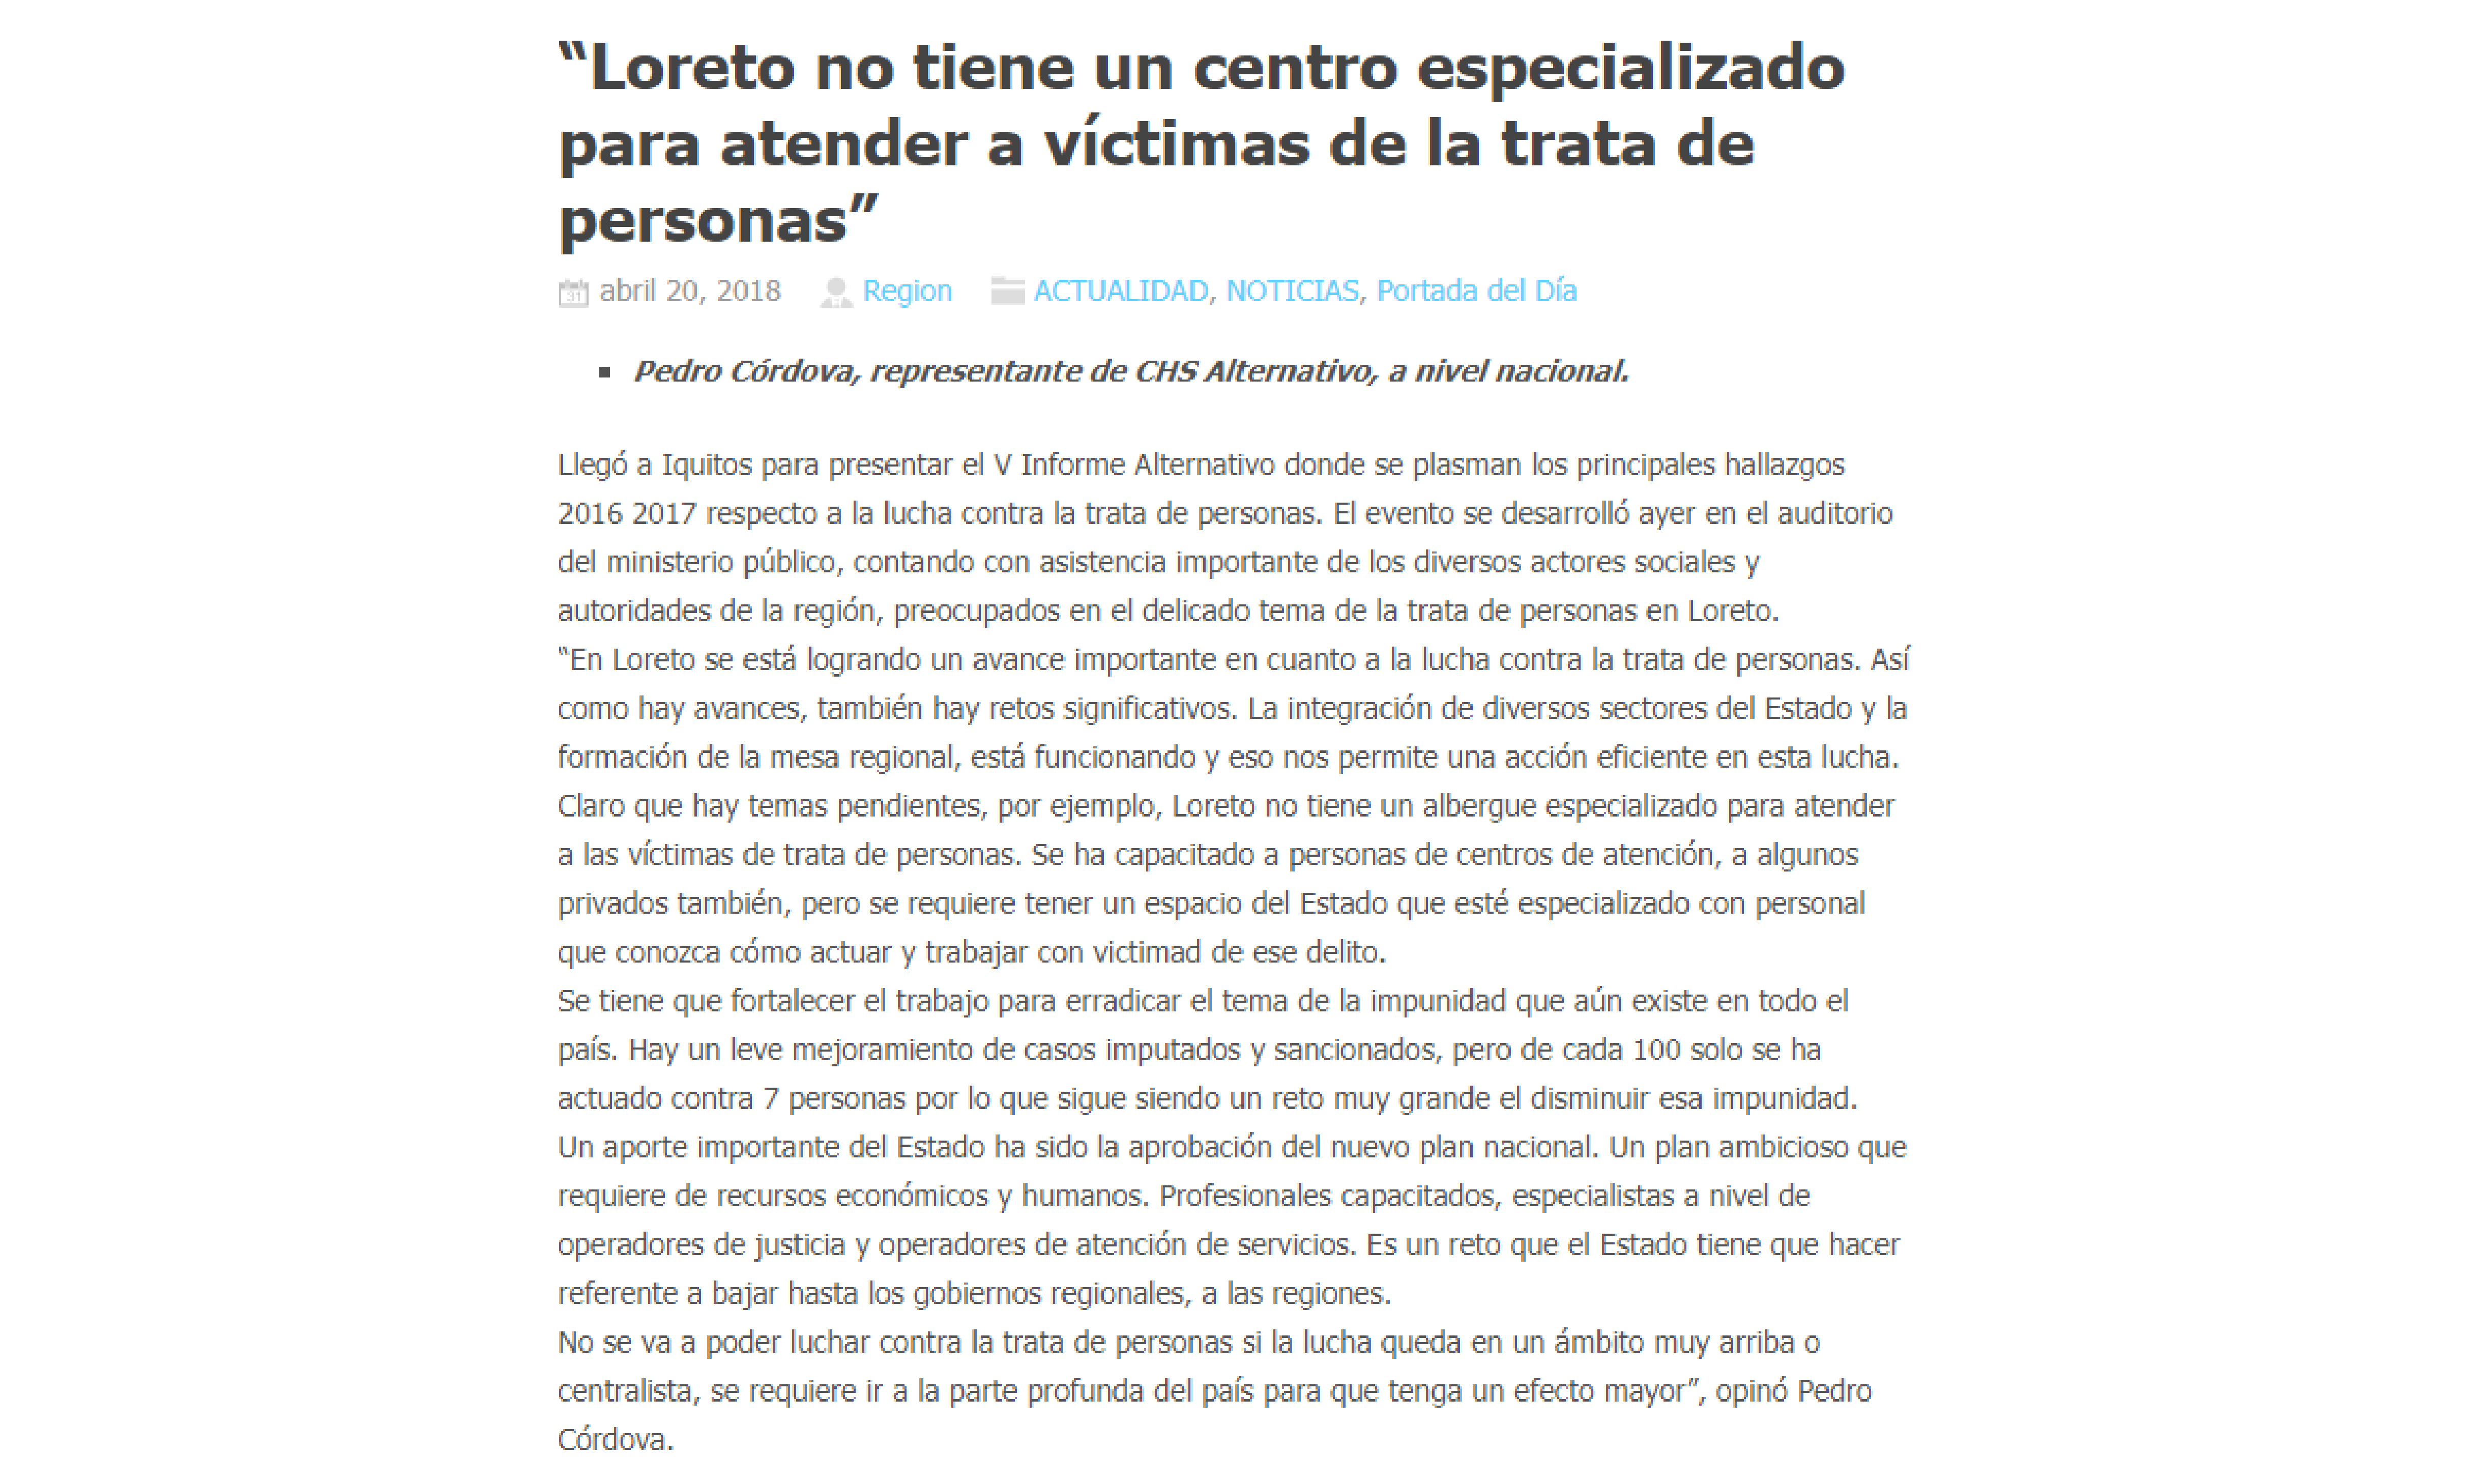 La Región: “Loreto no tiene un centro especializado para atender a víctimas de la trata de personas”